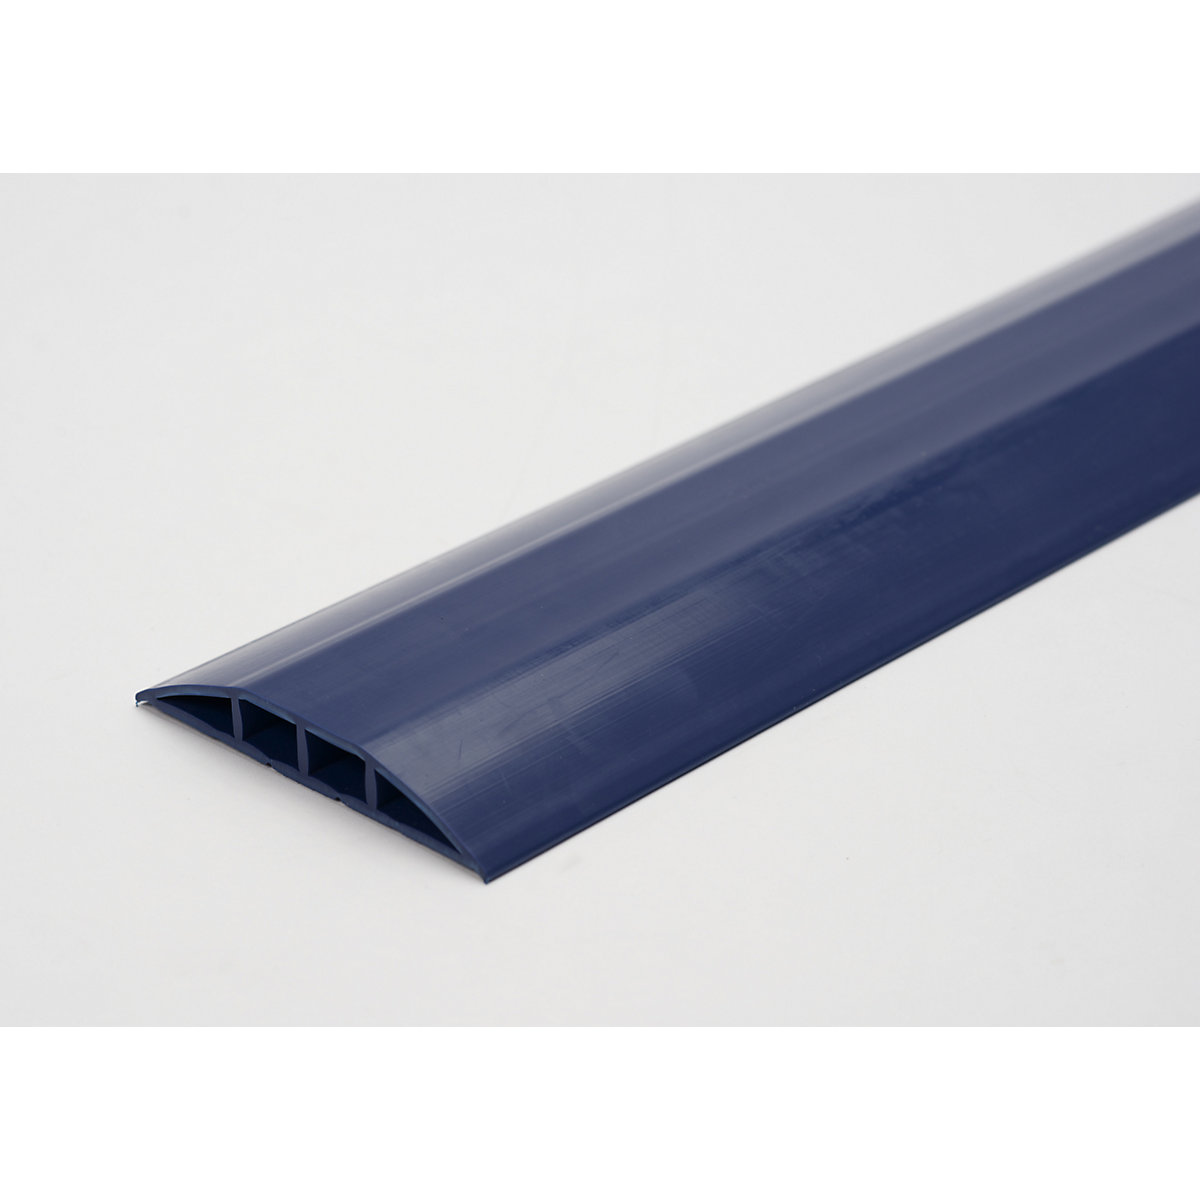 Műanyag kábelvezető padlóhíd, max. 7,5 mm Ø-jű kábelekhez és tömlőkhöz, kék színben, 2 kamrával, hossz 1,5 m-3